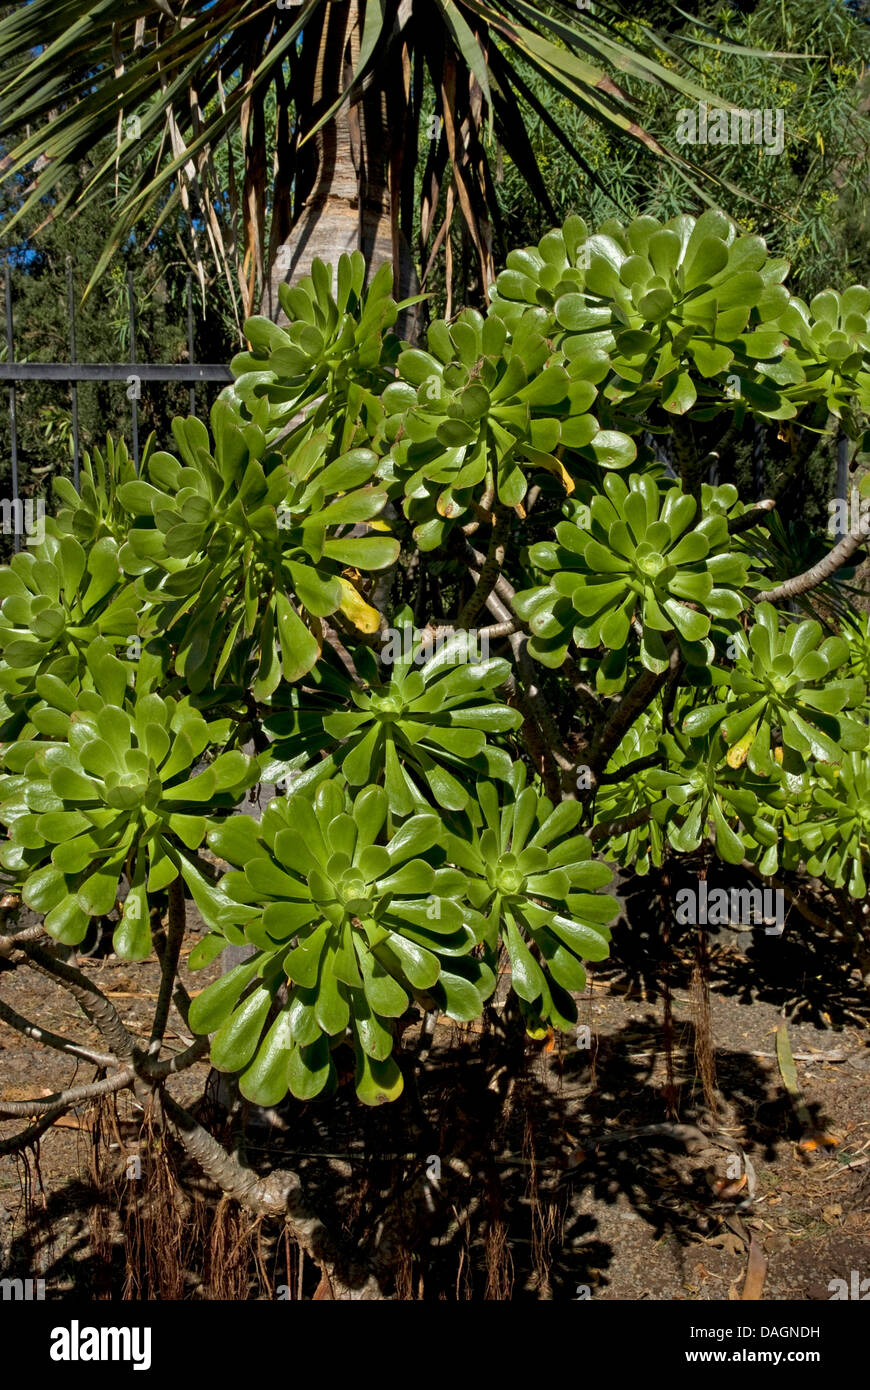 Aeonium (Aeonium manriqueorum), Canary Islands, Gran Canaria Stock Photo